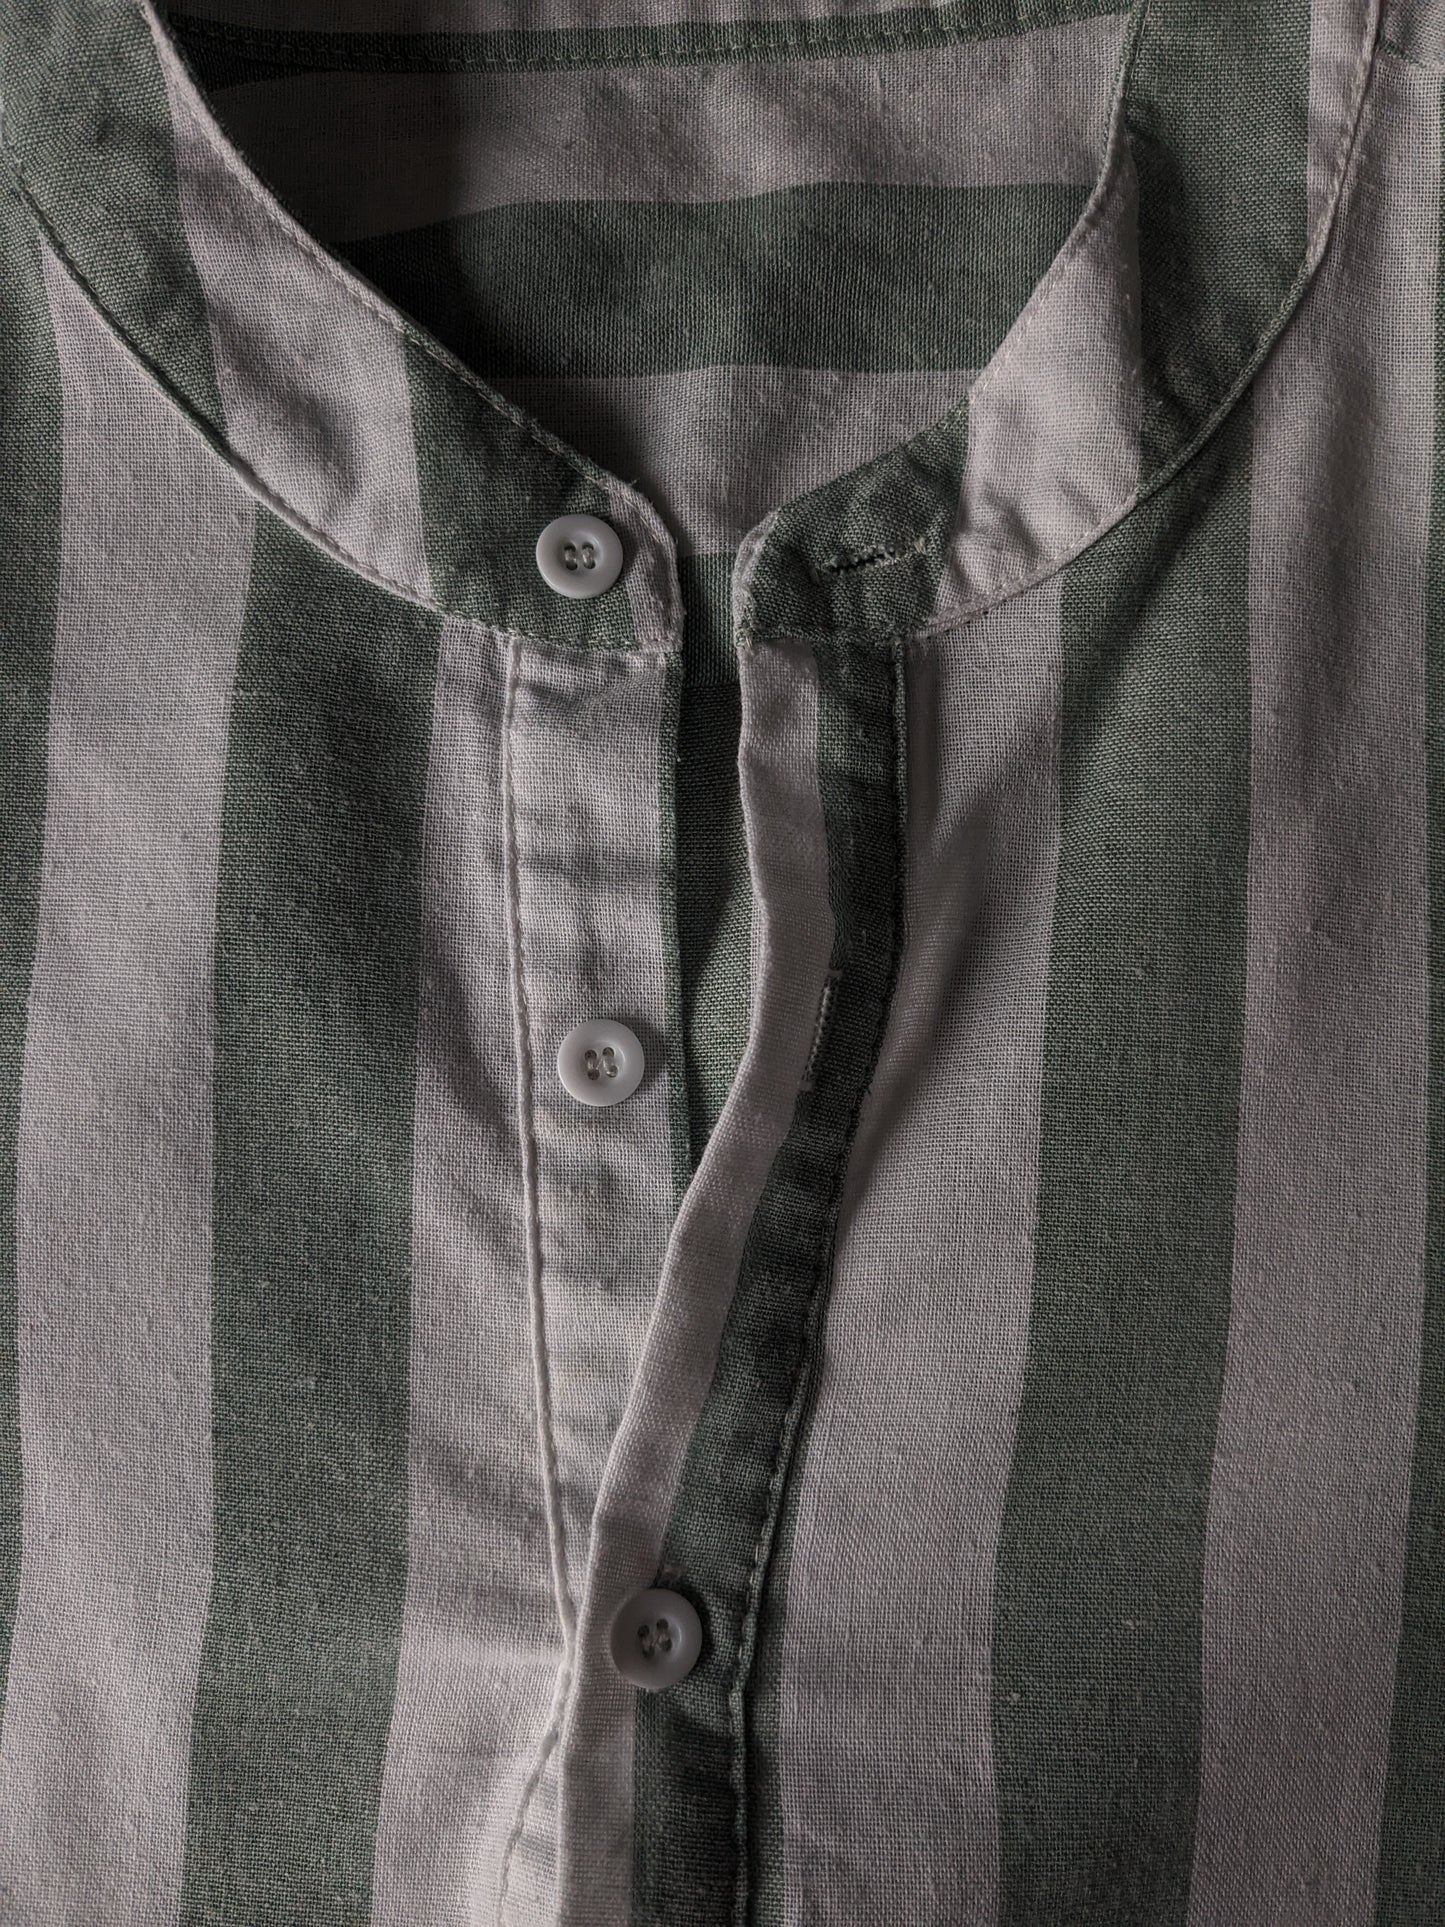 Merkloos overhemd-shirt met boeren / opstaande / mao kraag. Groen Wit gestreept. Maat M / L.